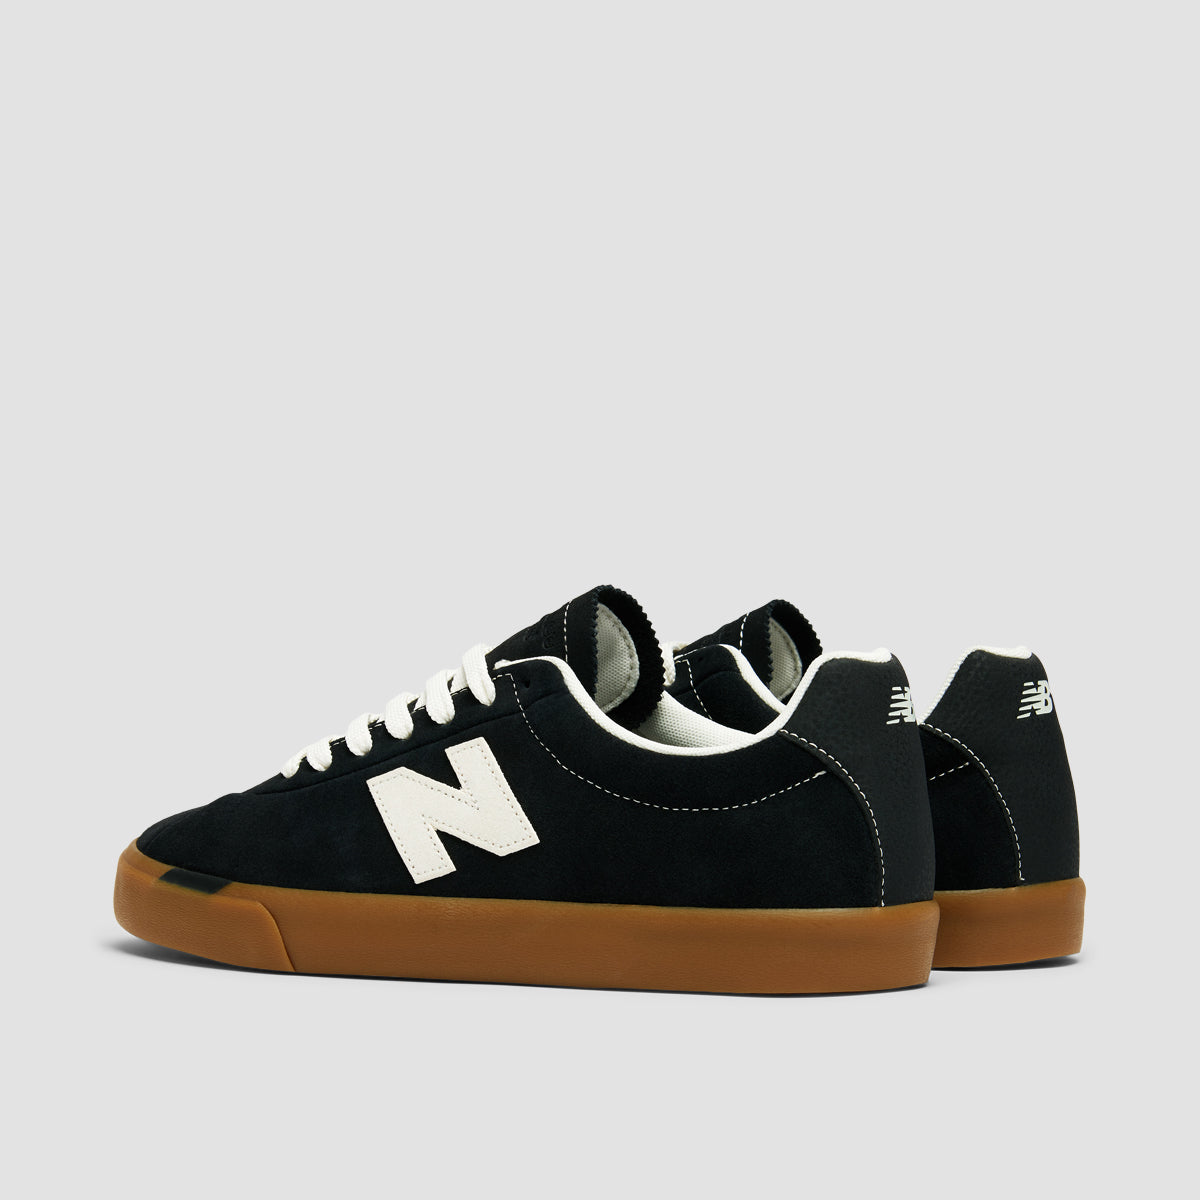 New Balance Numeric 22 Shoes - Black/White